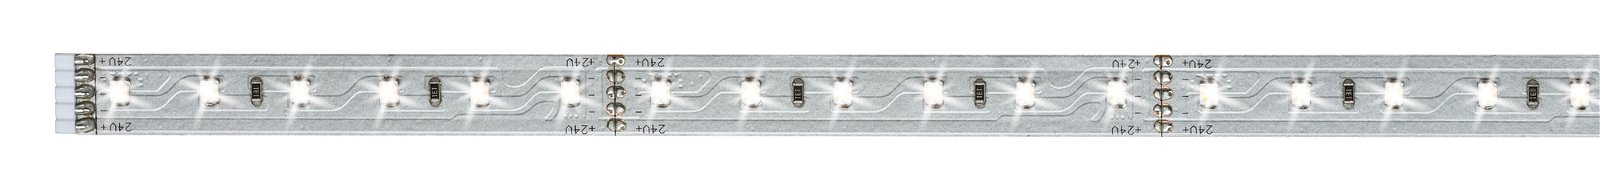 MaxLED 500 LED Strip Tageslichtweiß Einzelstripe 1m 6W 550lm/m 6500K